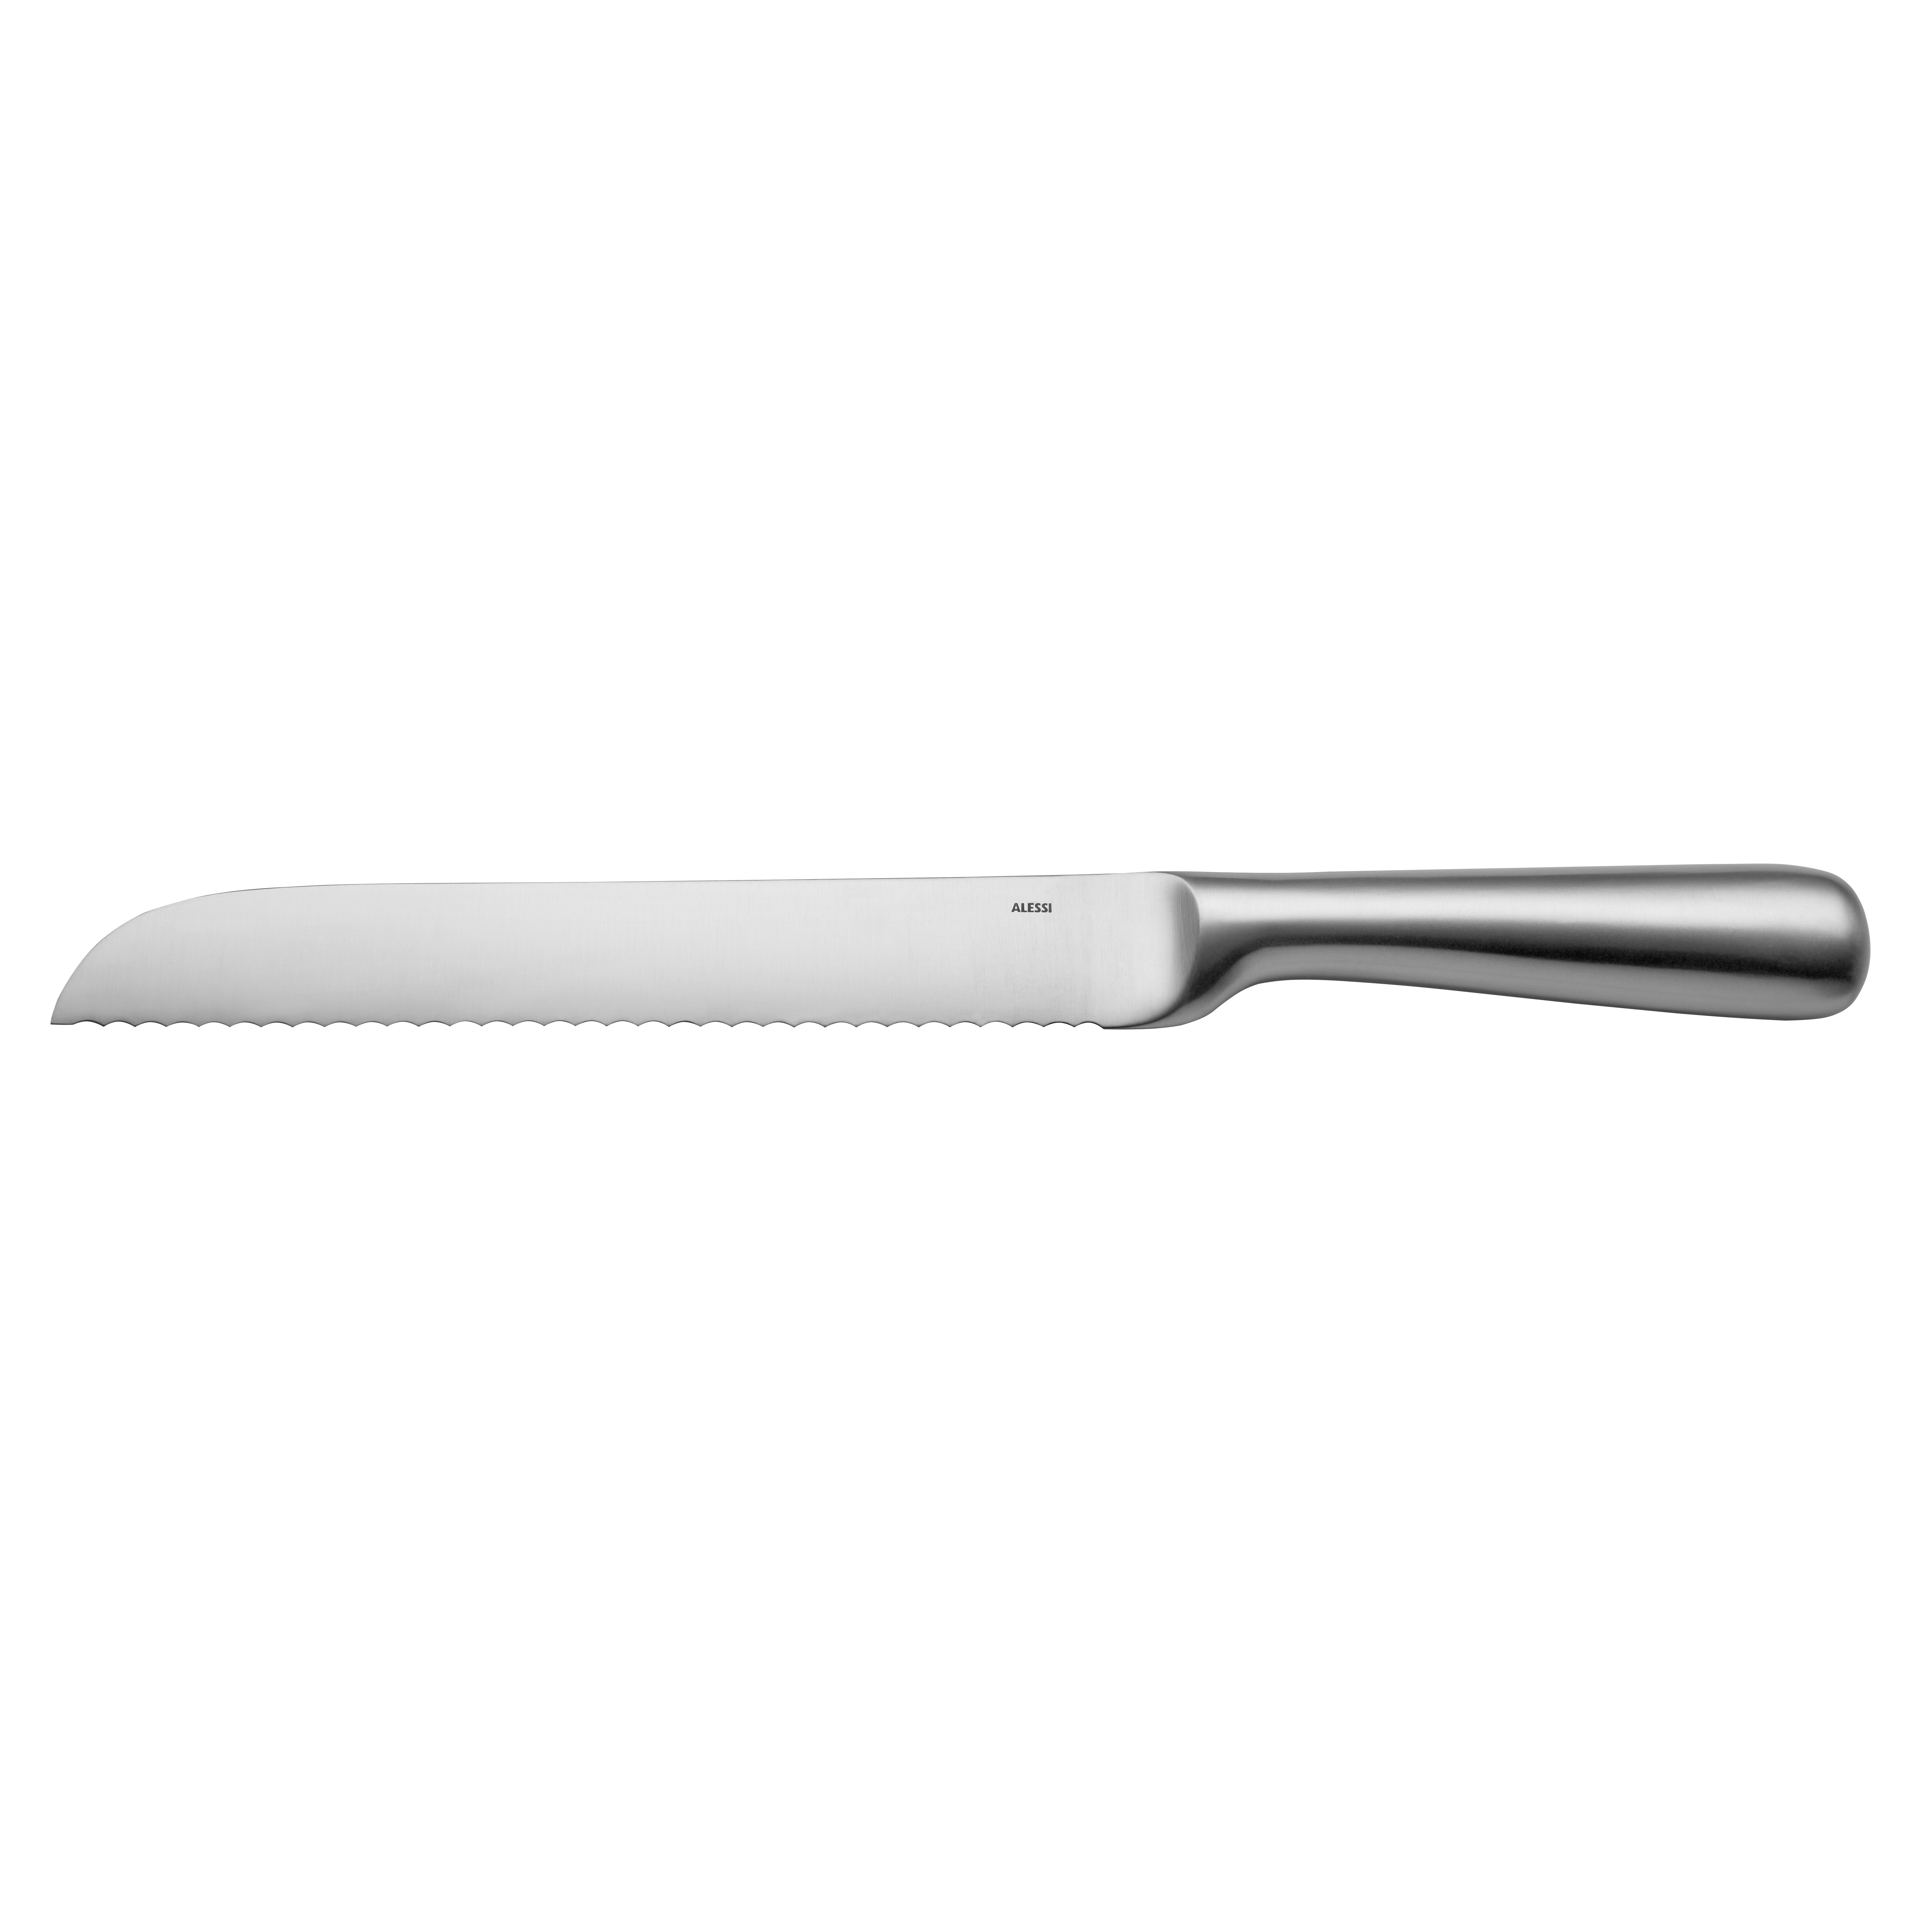 Mami ナイフ, bread knife